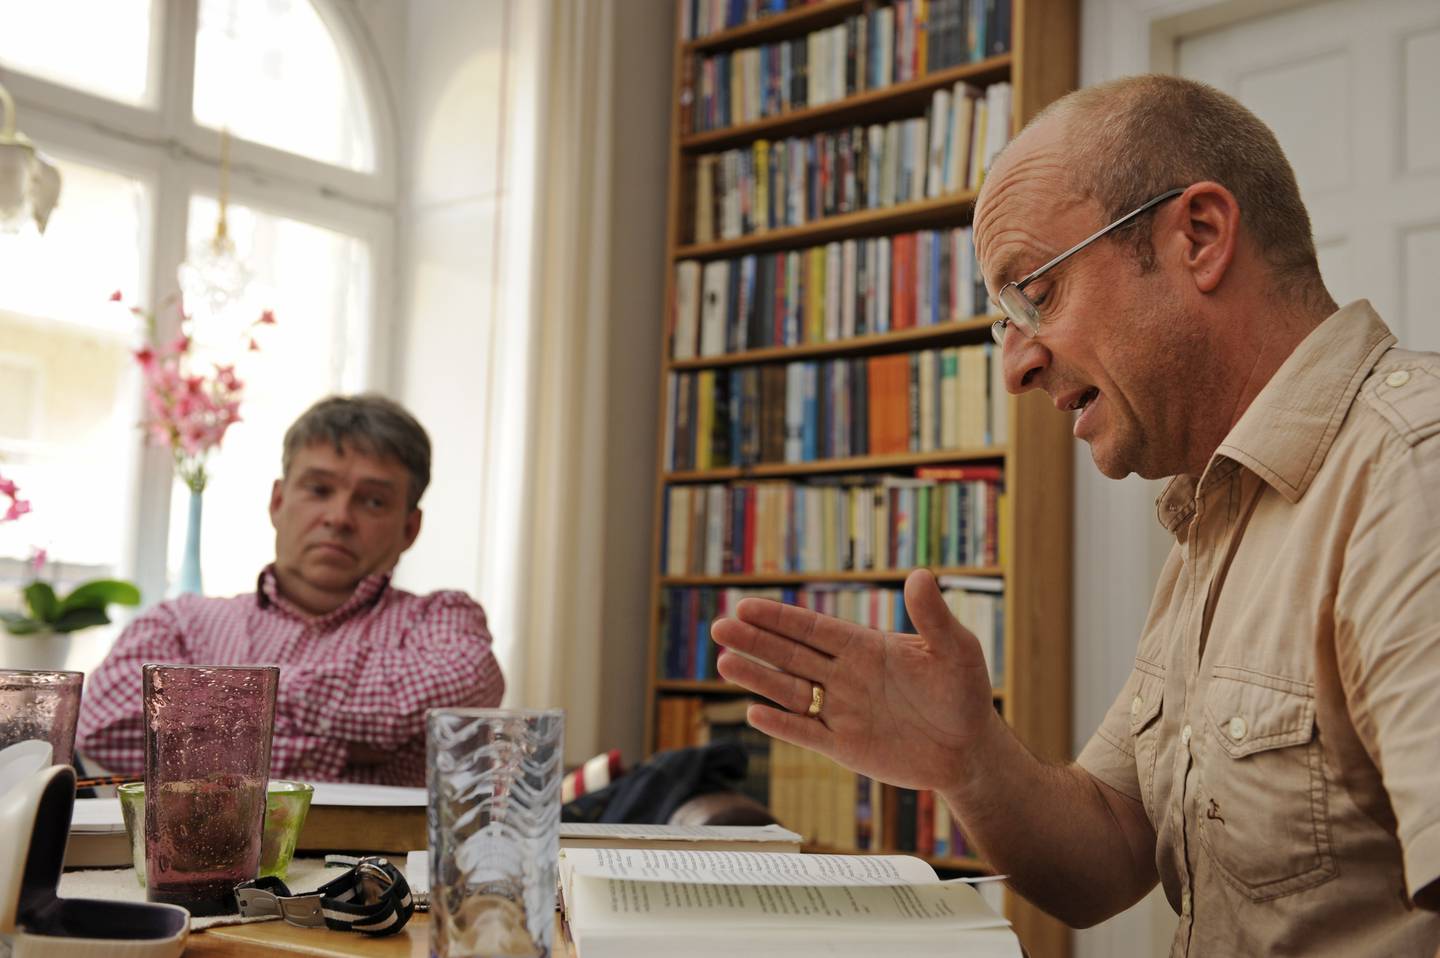 Stefan Swärd och Jonas Gardell sitter vid ett matbord och äter lunch och diskuterar tro i ett rum med bokhyllor.